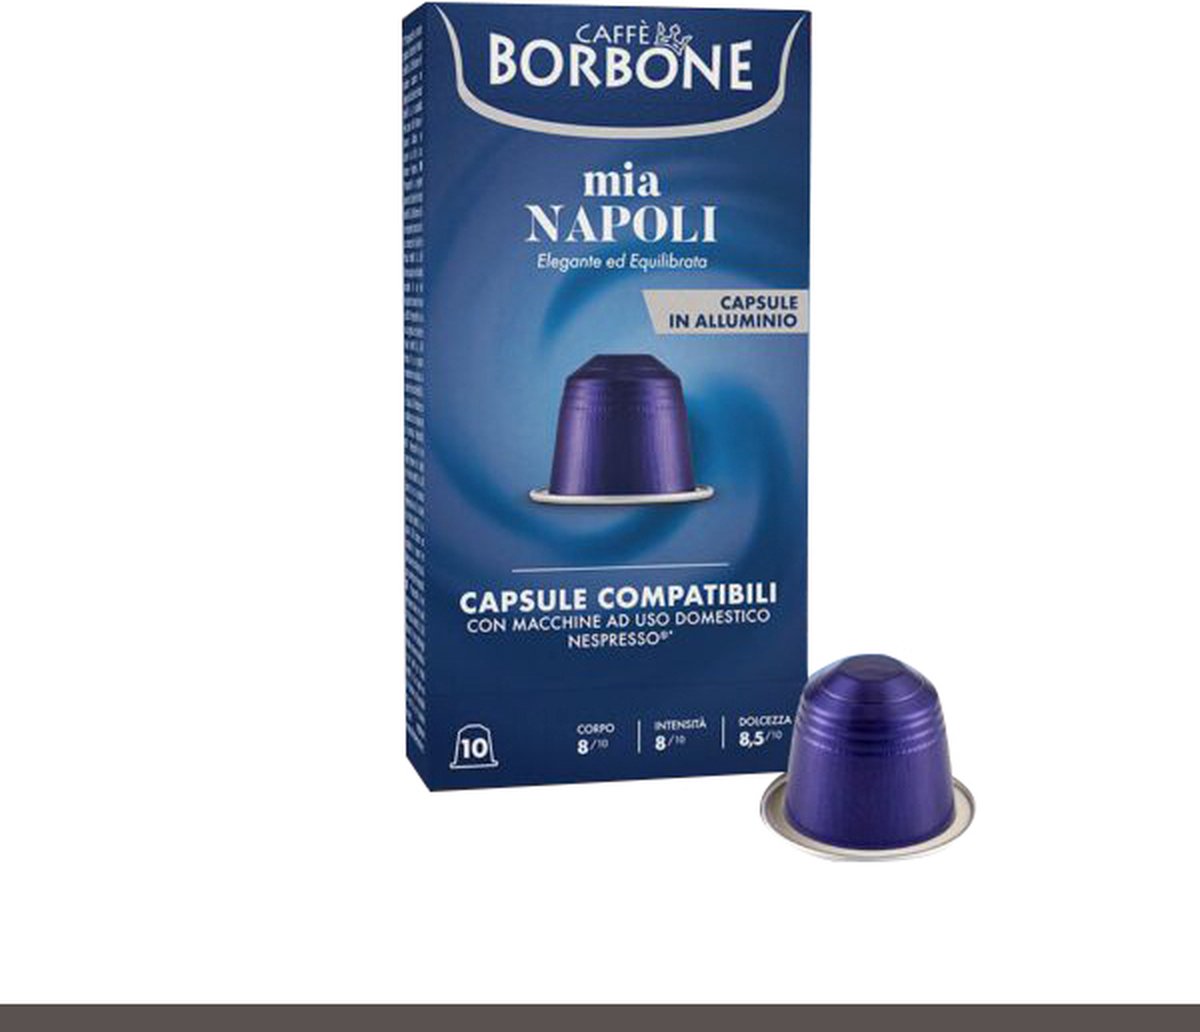 Caffe Borbone capsule 10x5 Nespresso Mia Napoli